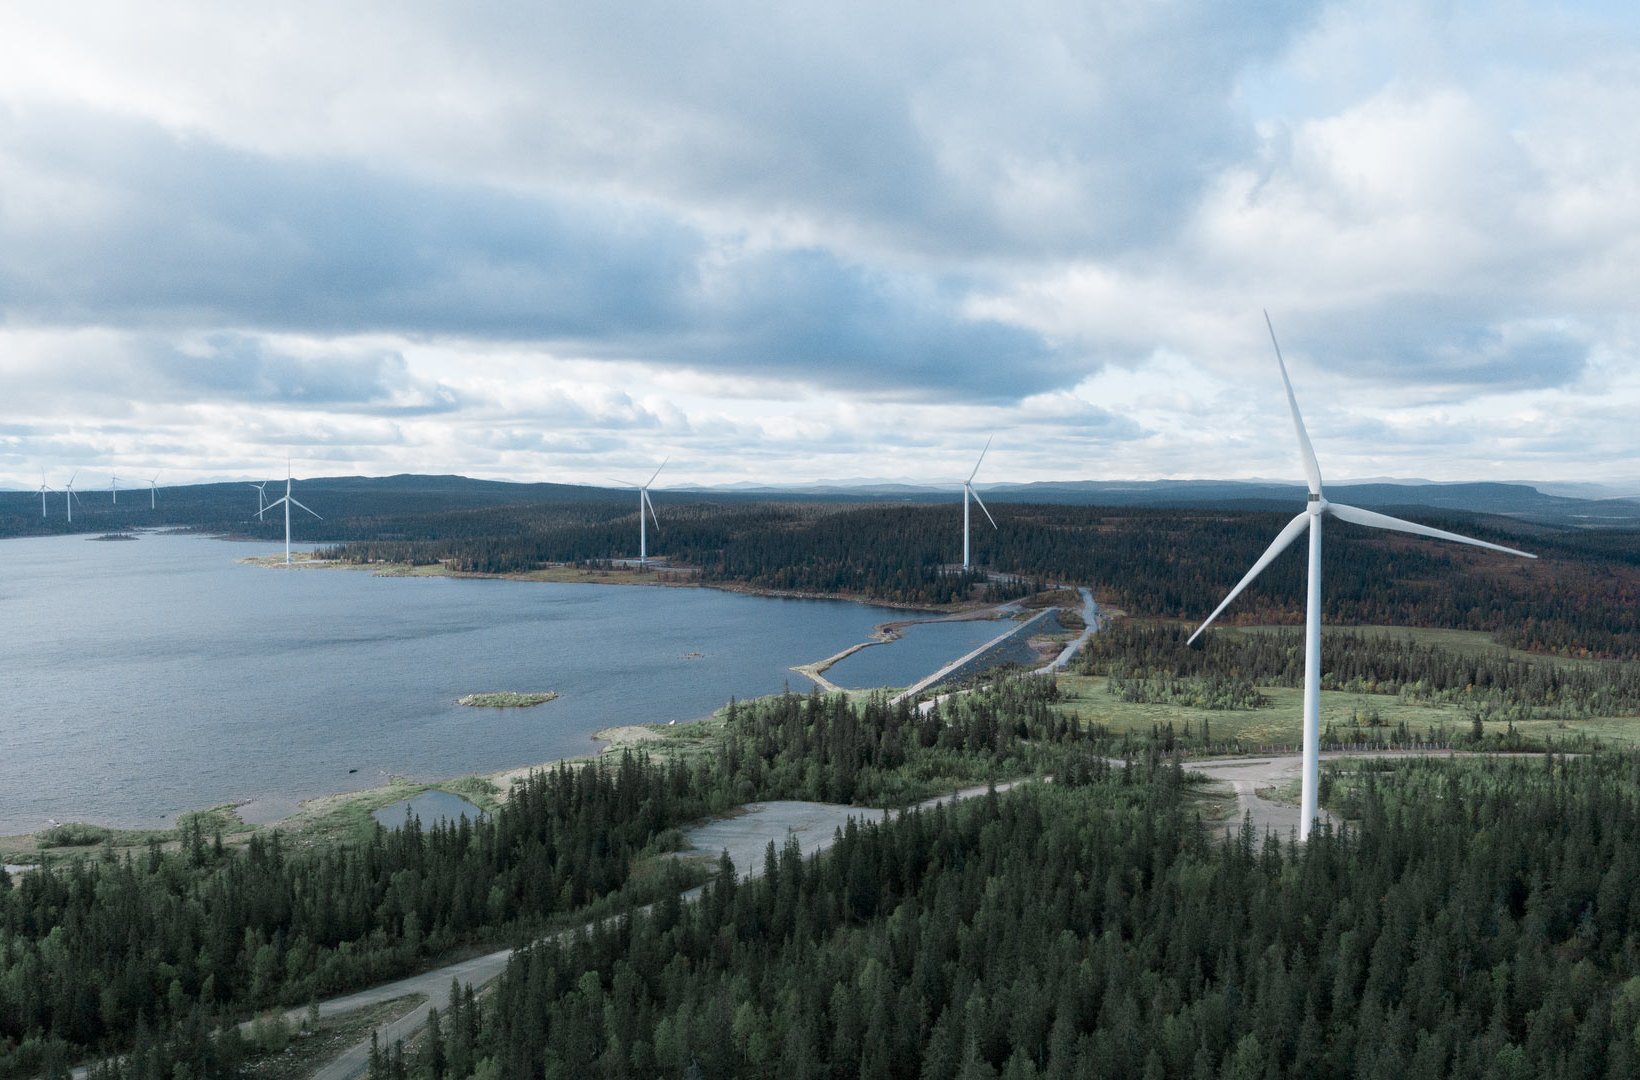 Juktan wind farm in Sweden